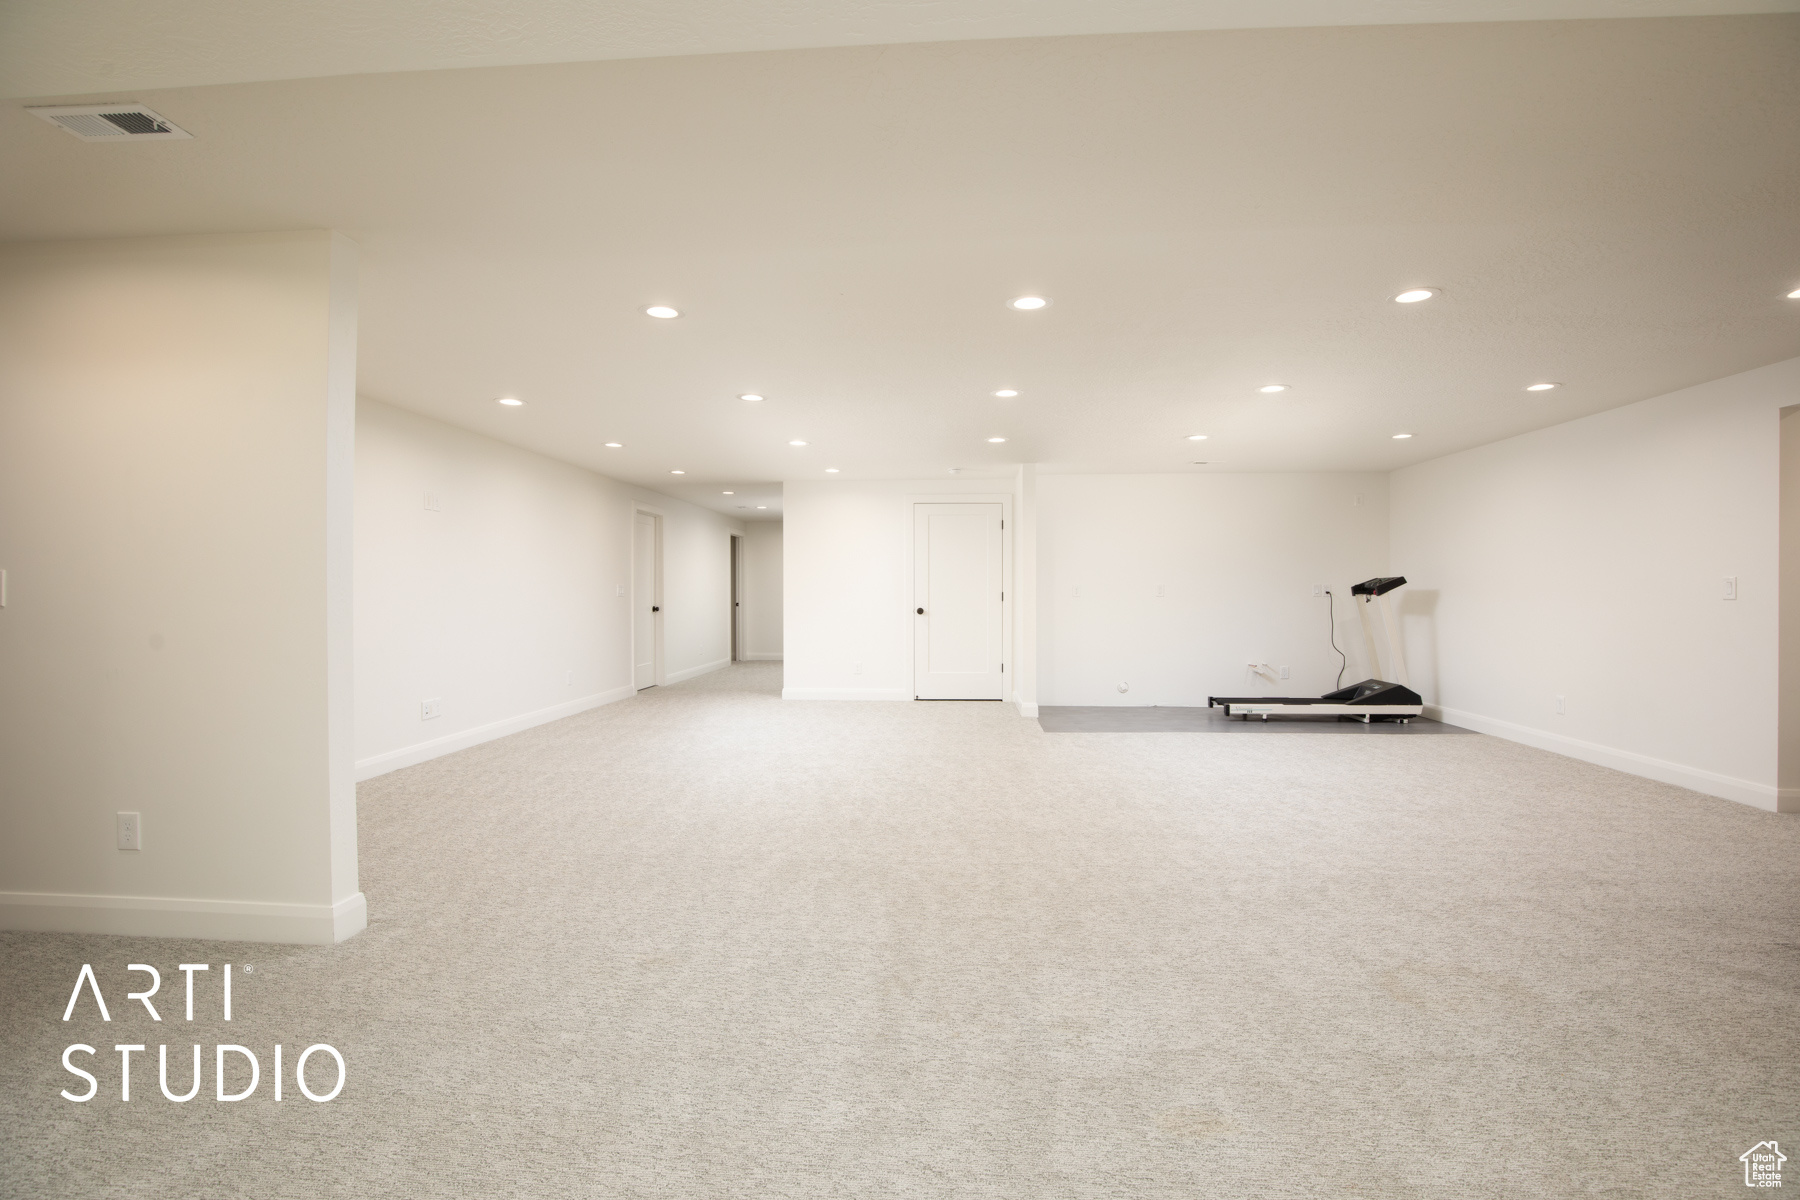 Interior space featuring light carpet